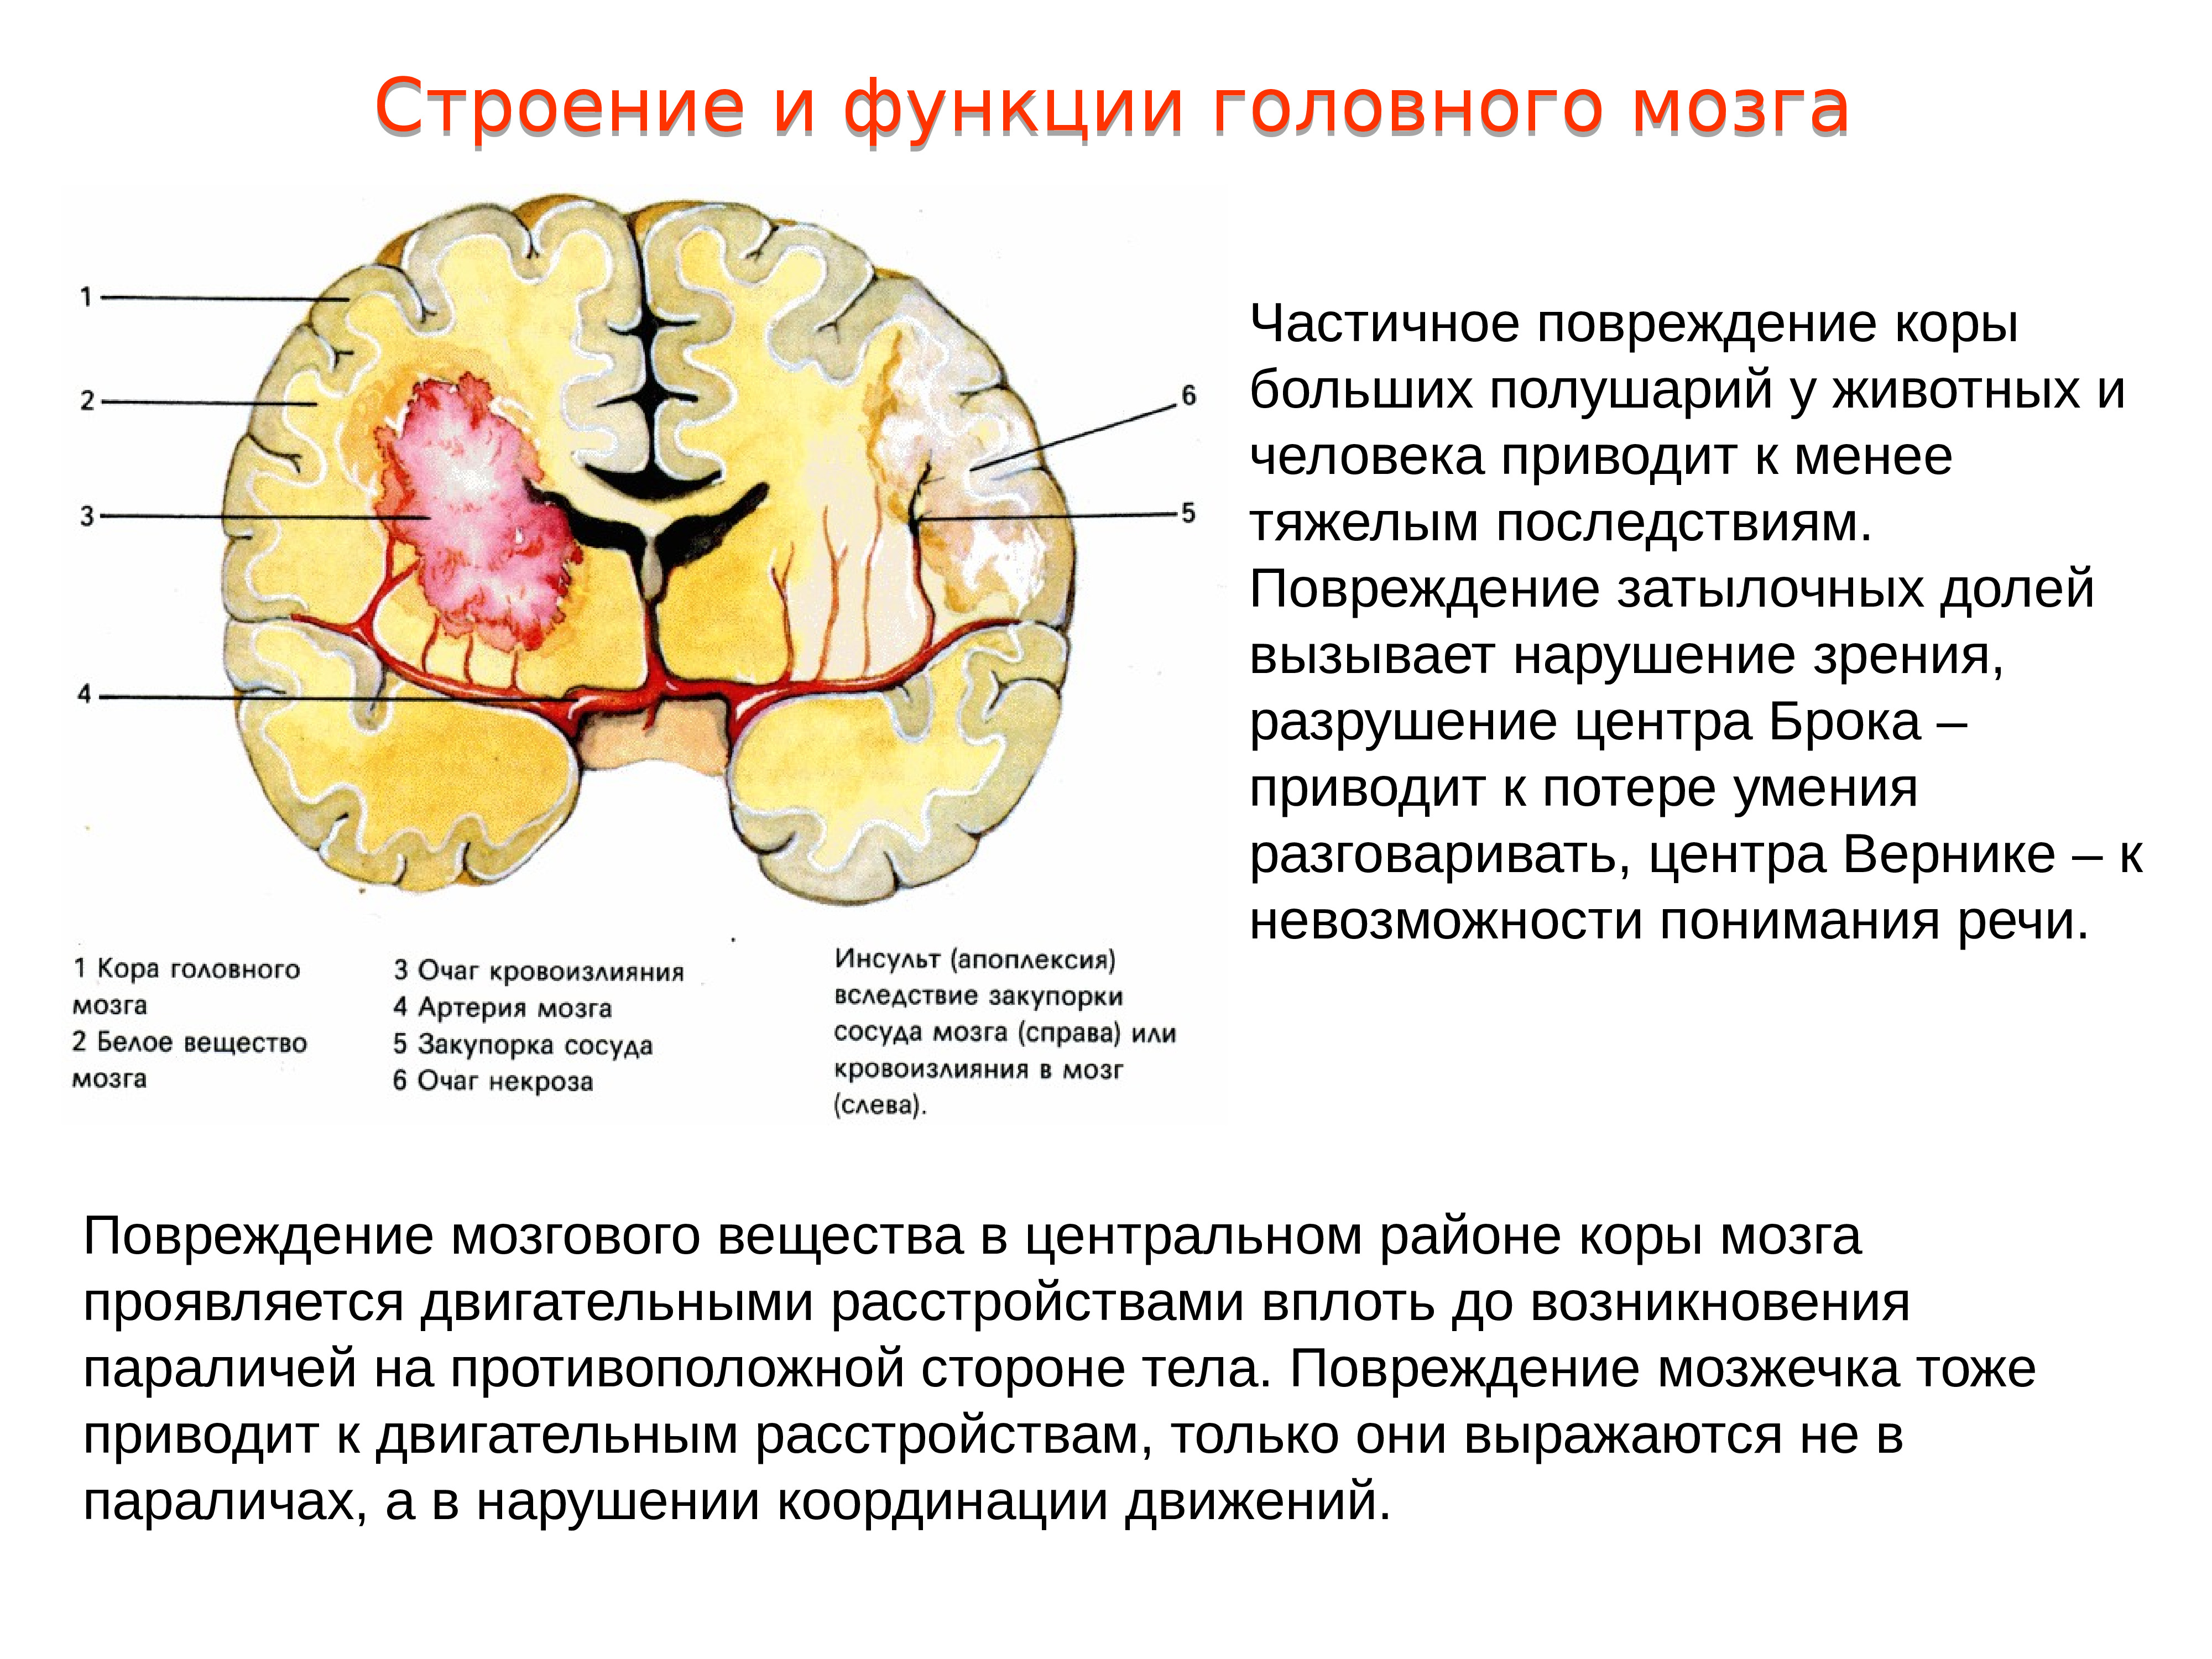 Очаговые изменения больших полушарий. Локальное повреждение коры головного мозга. Повреждения затылочной доли мозга. Повреждение коры больших полушарий головного мозга.